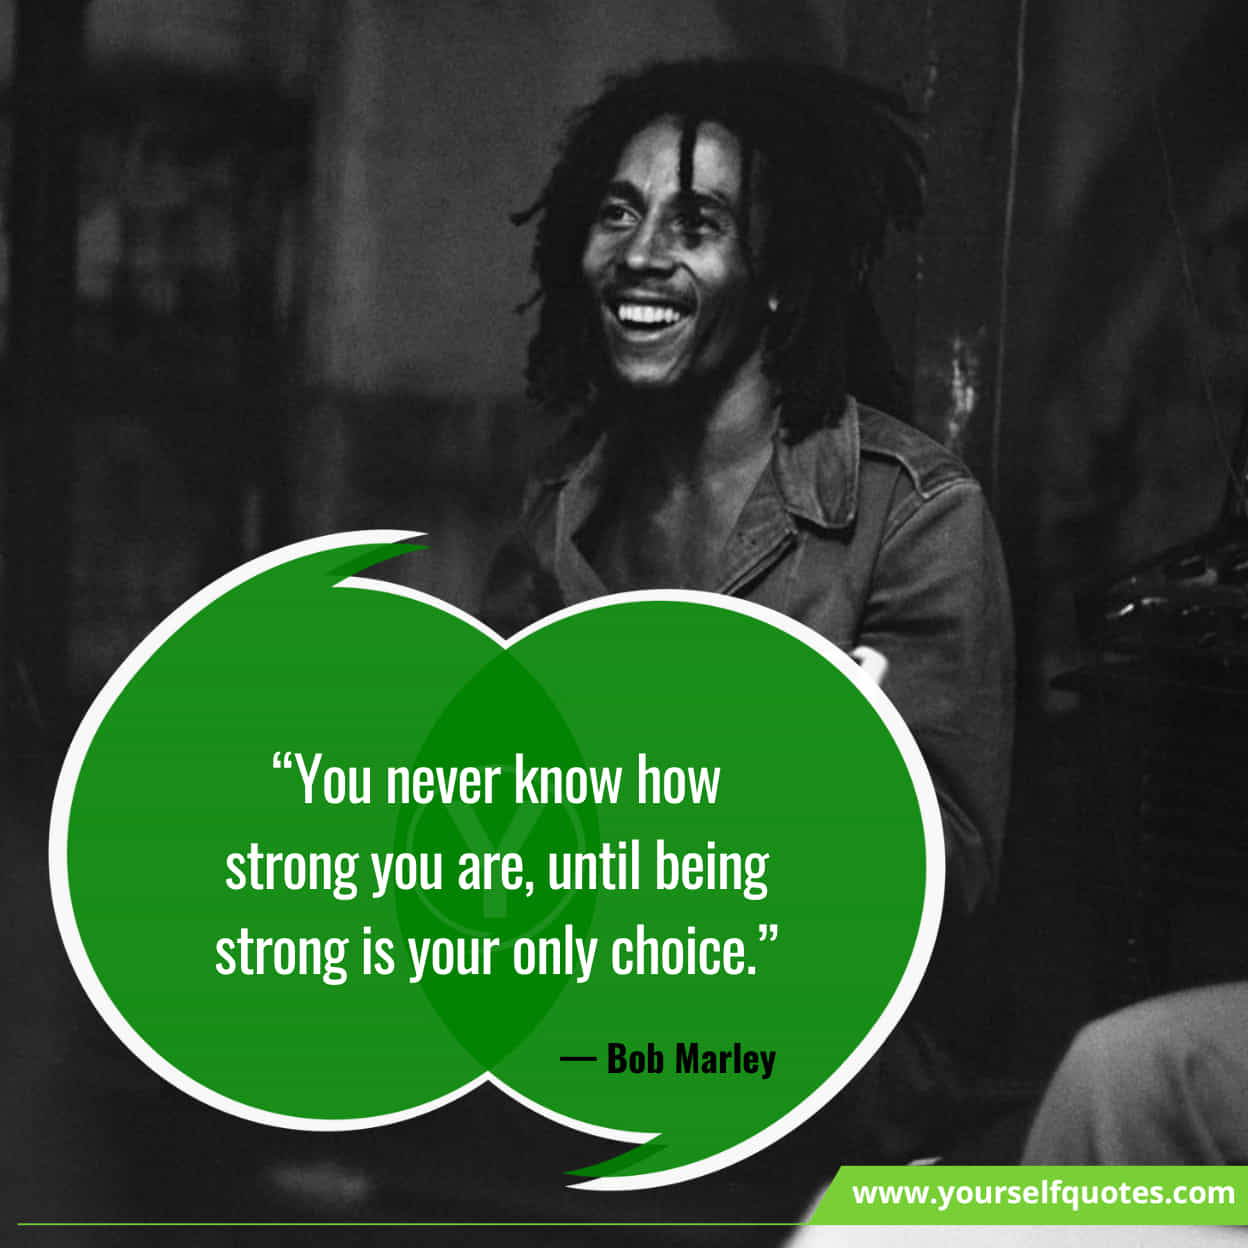 Bob Marley Inspiring Quotes